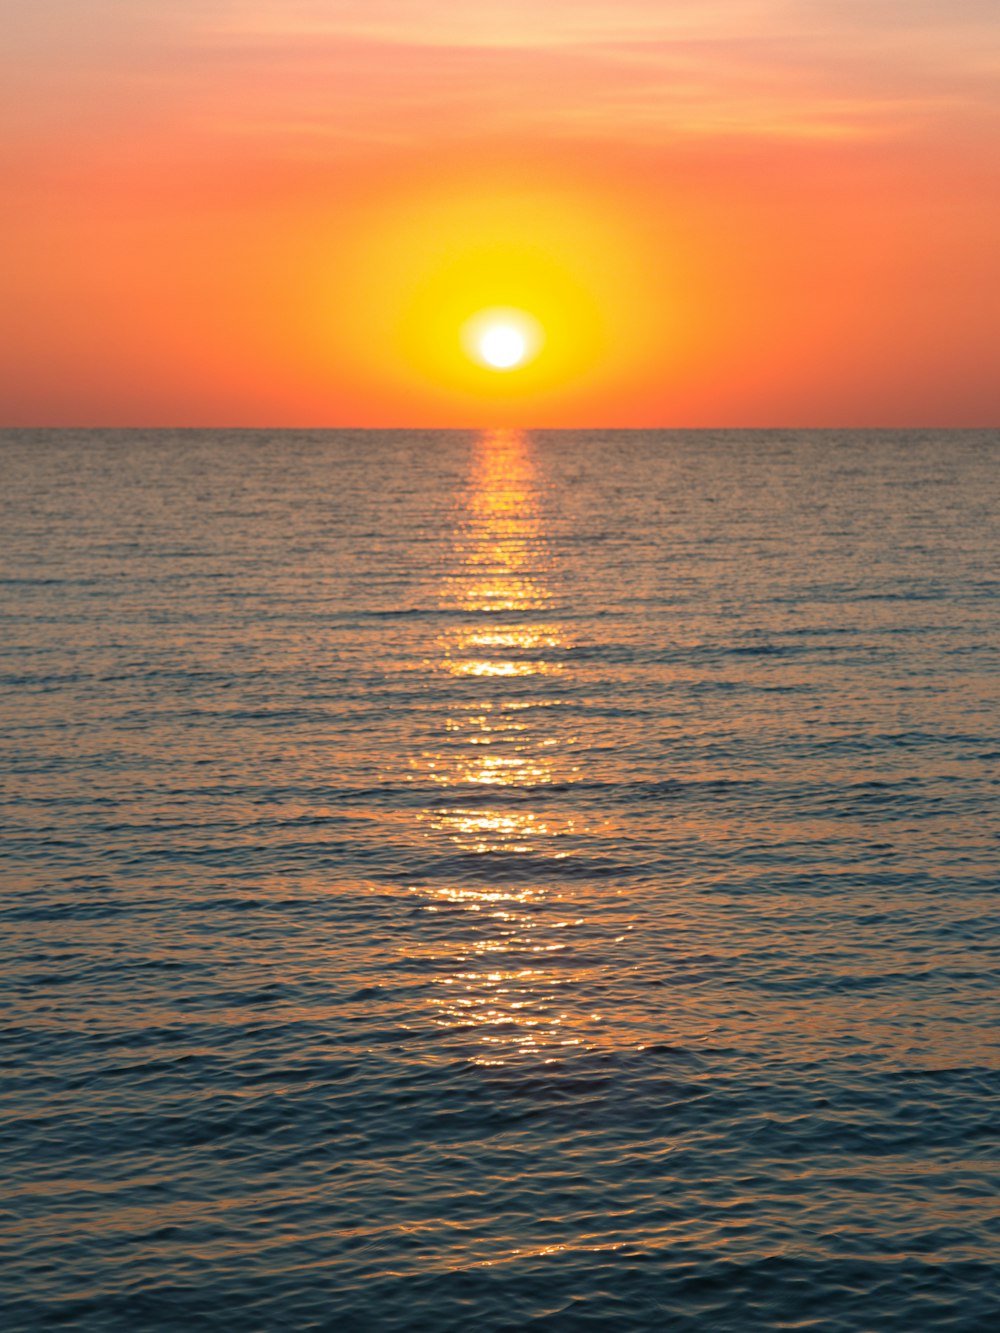 Le soleil se couche sur l’océan avec un bateau dans l’eau